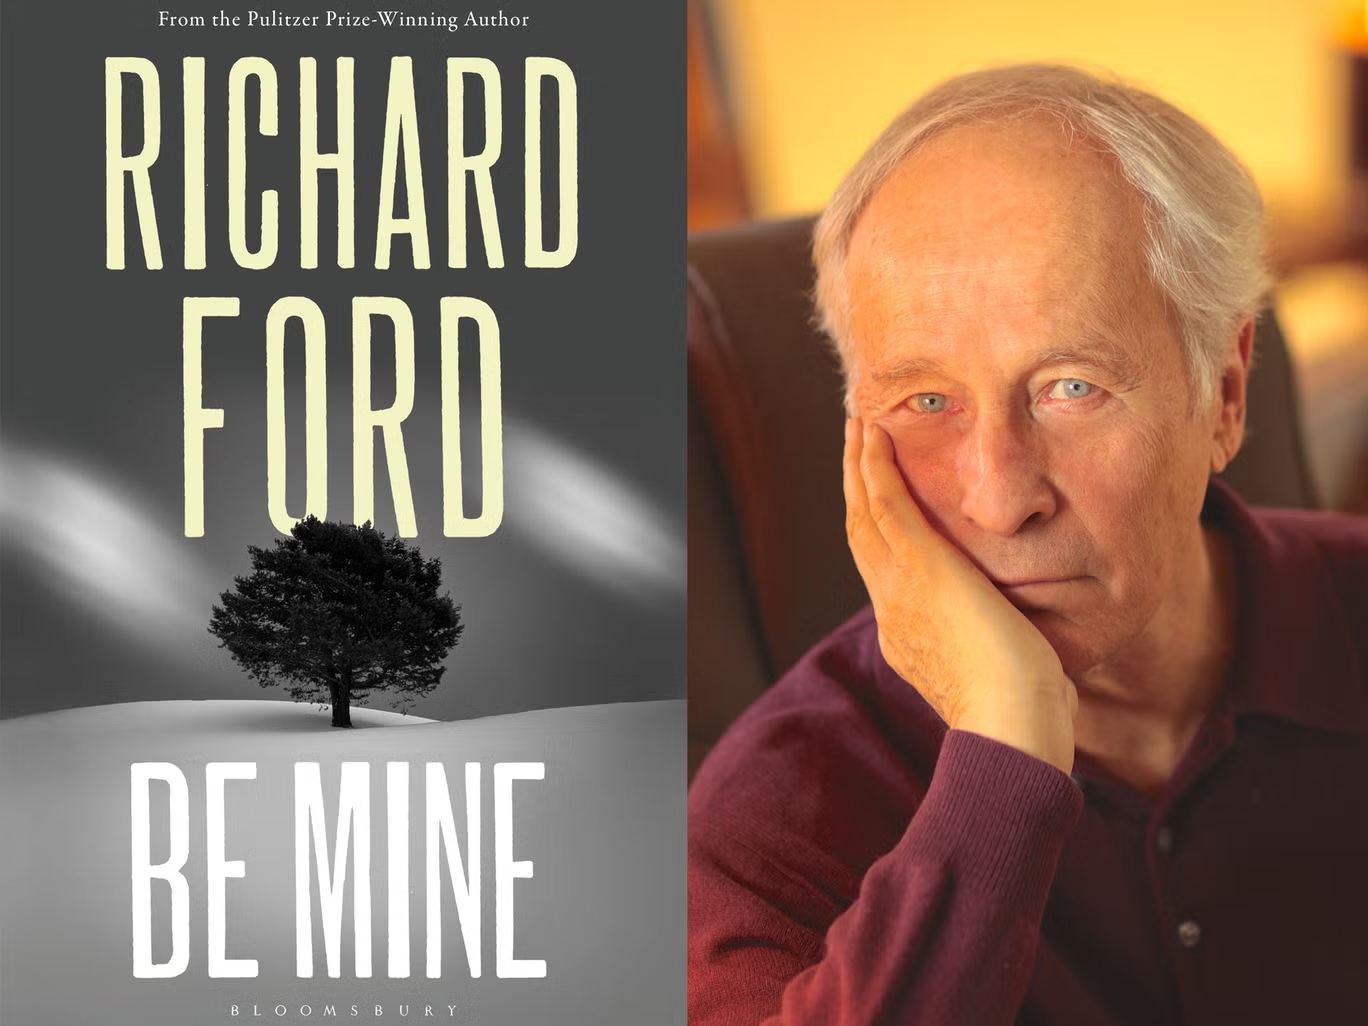  رواية "كن لي" ل ريتشارد فورد هي تذكير بهيج بأن الاهتمام الدقيق بالحياة المعاشة هو تجديد وتأكيد في آن معاً (اندبندنت)